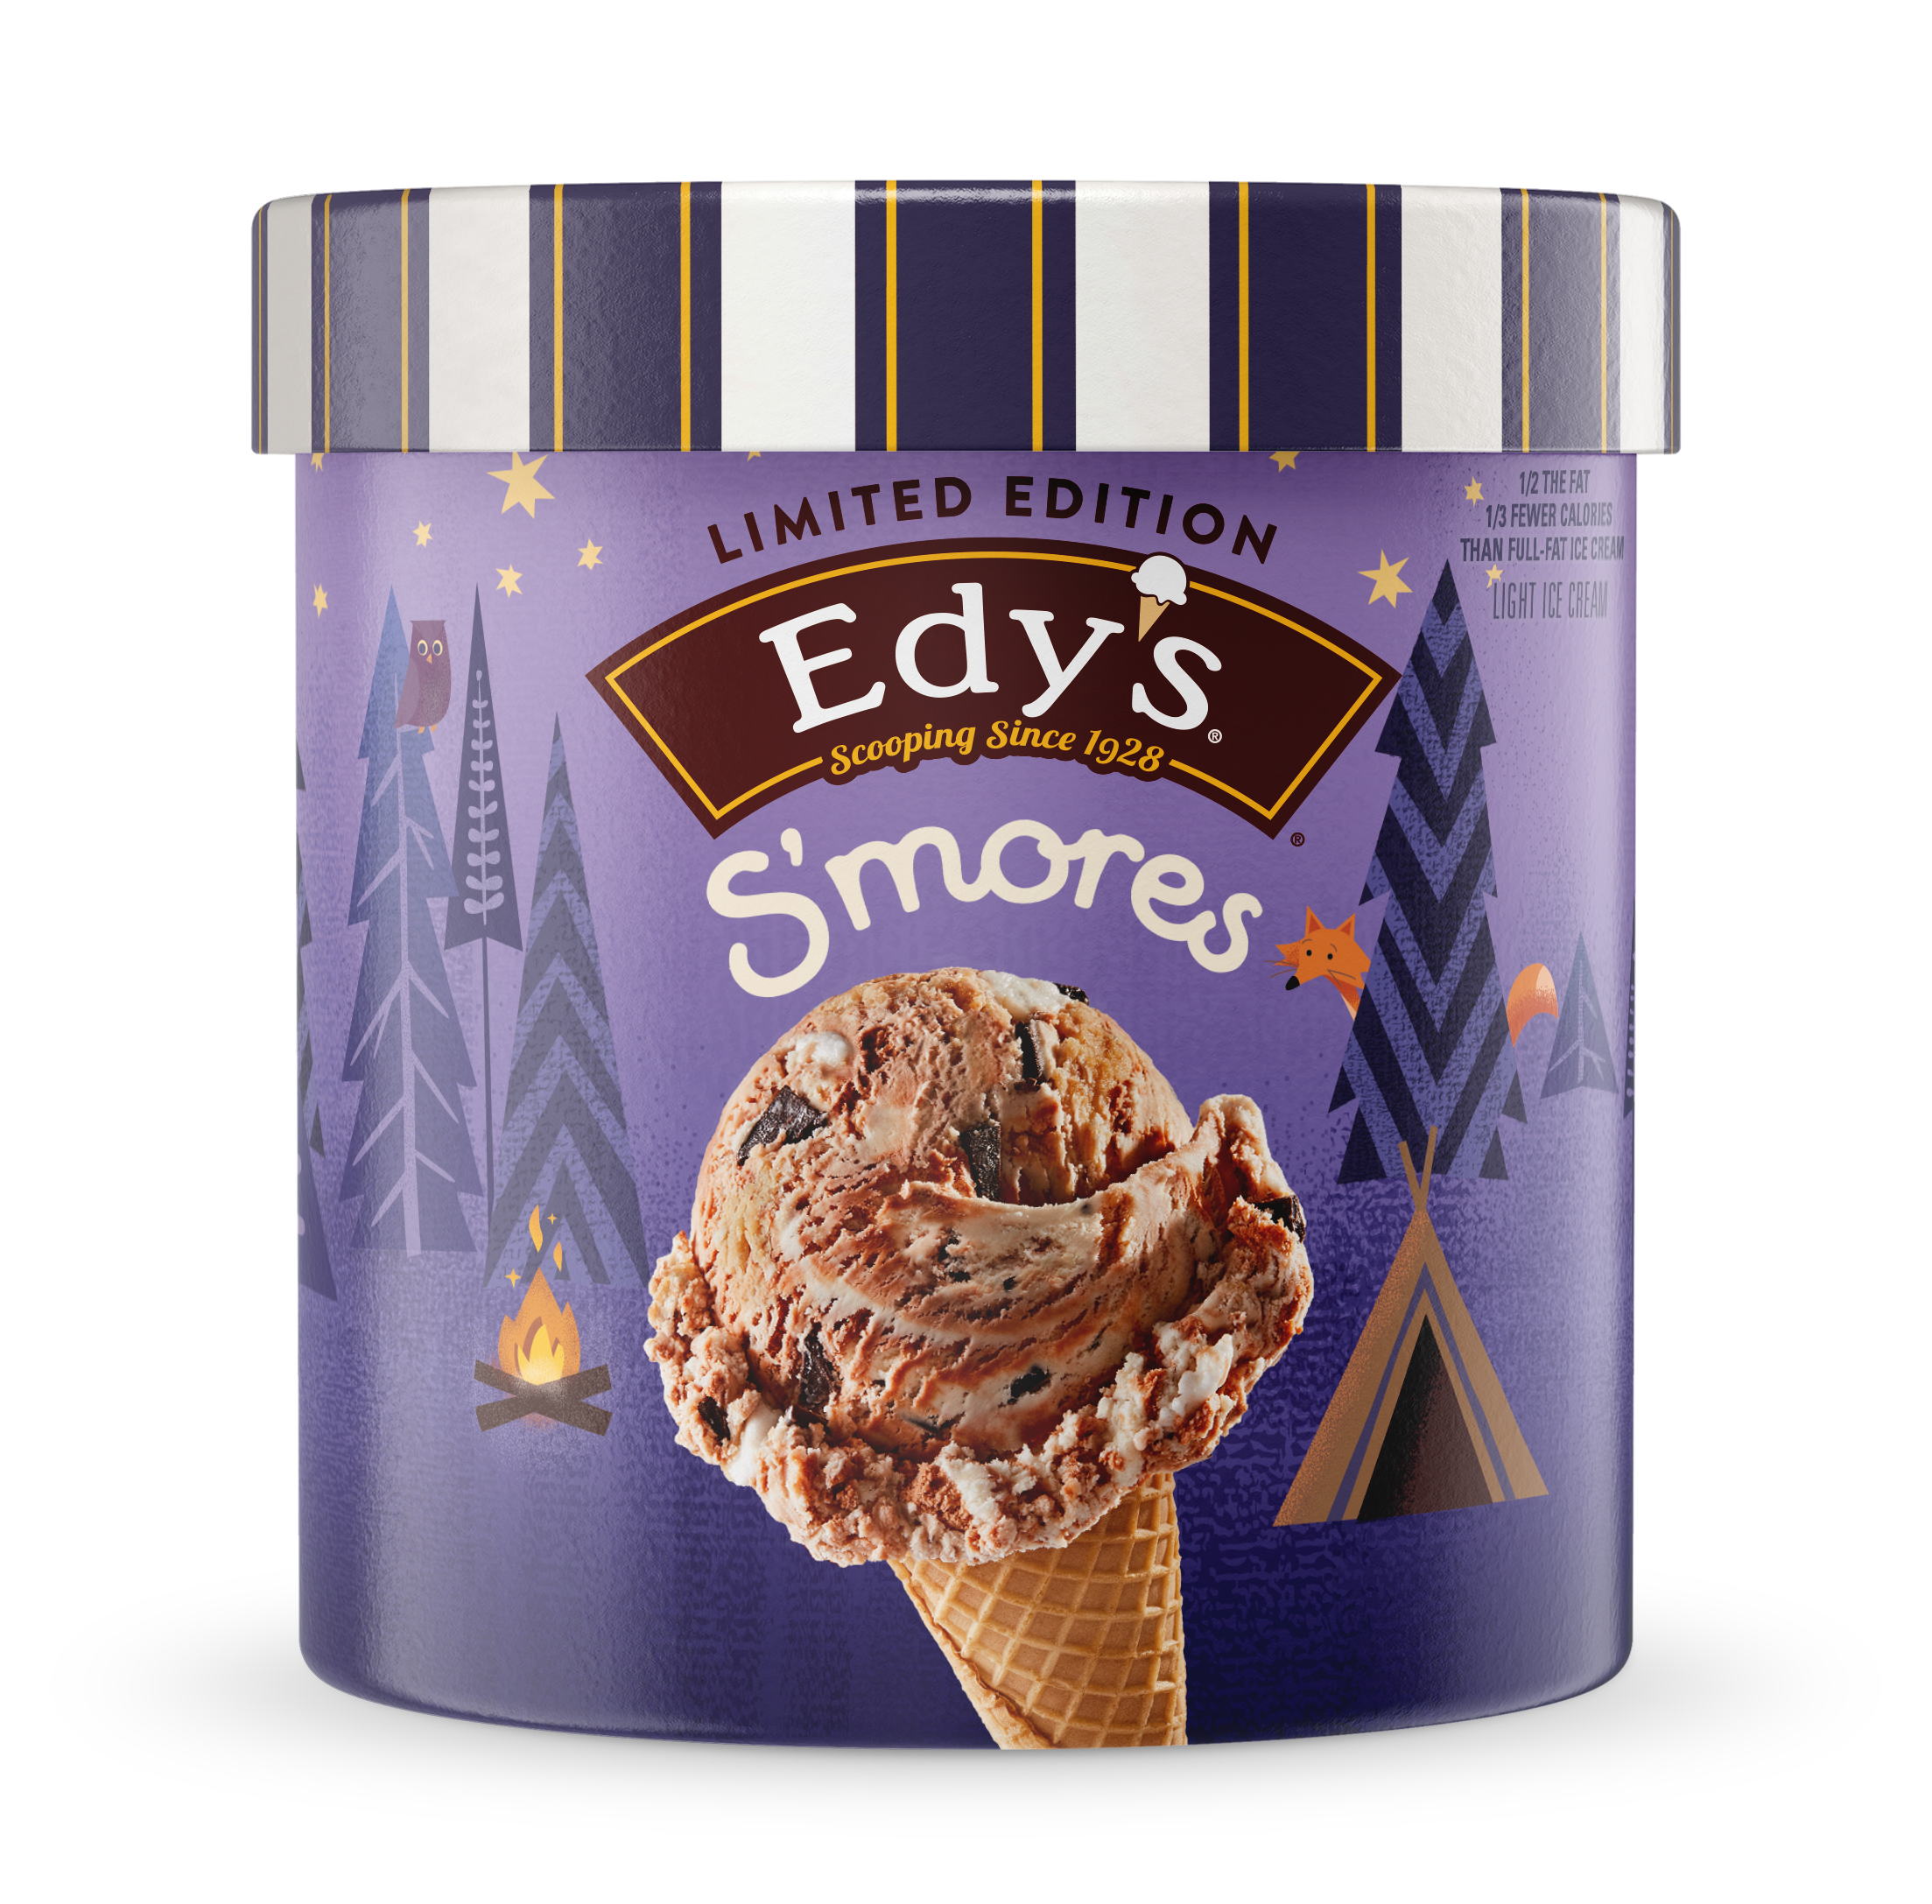 Carton of Edy's s'mores ice cream